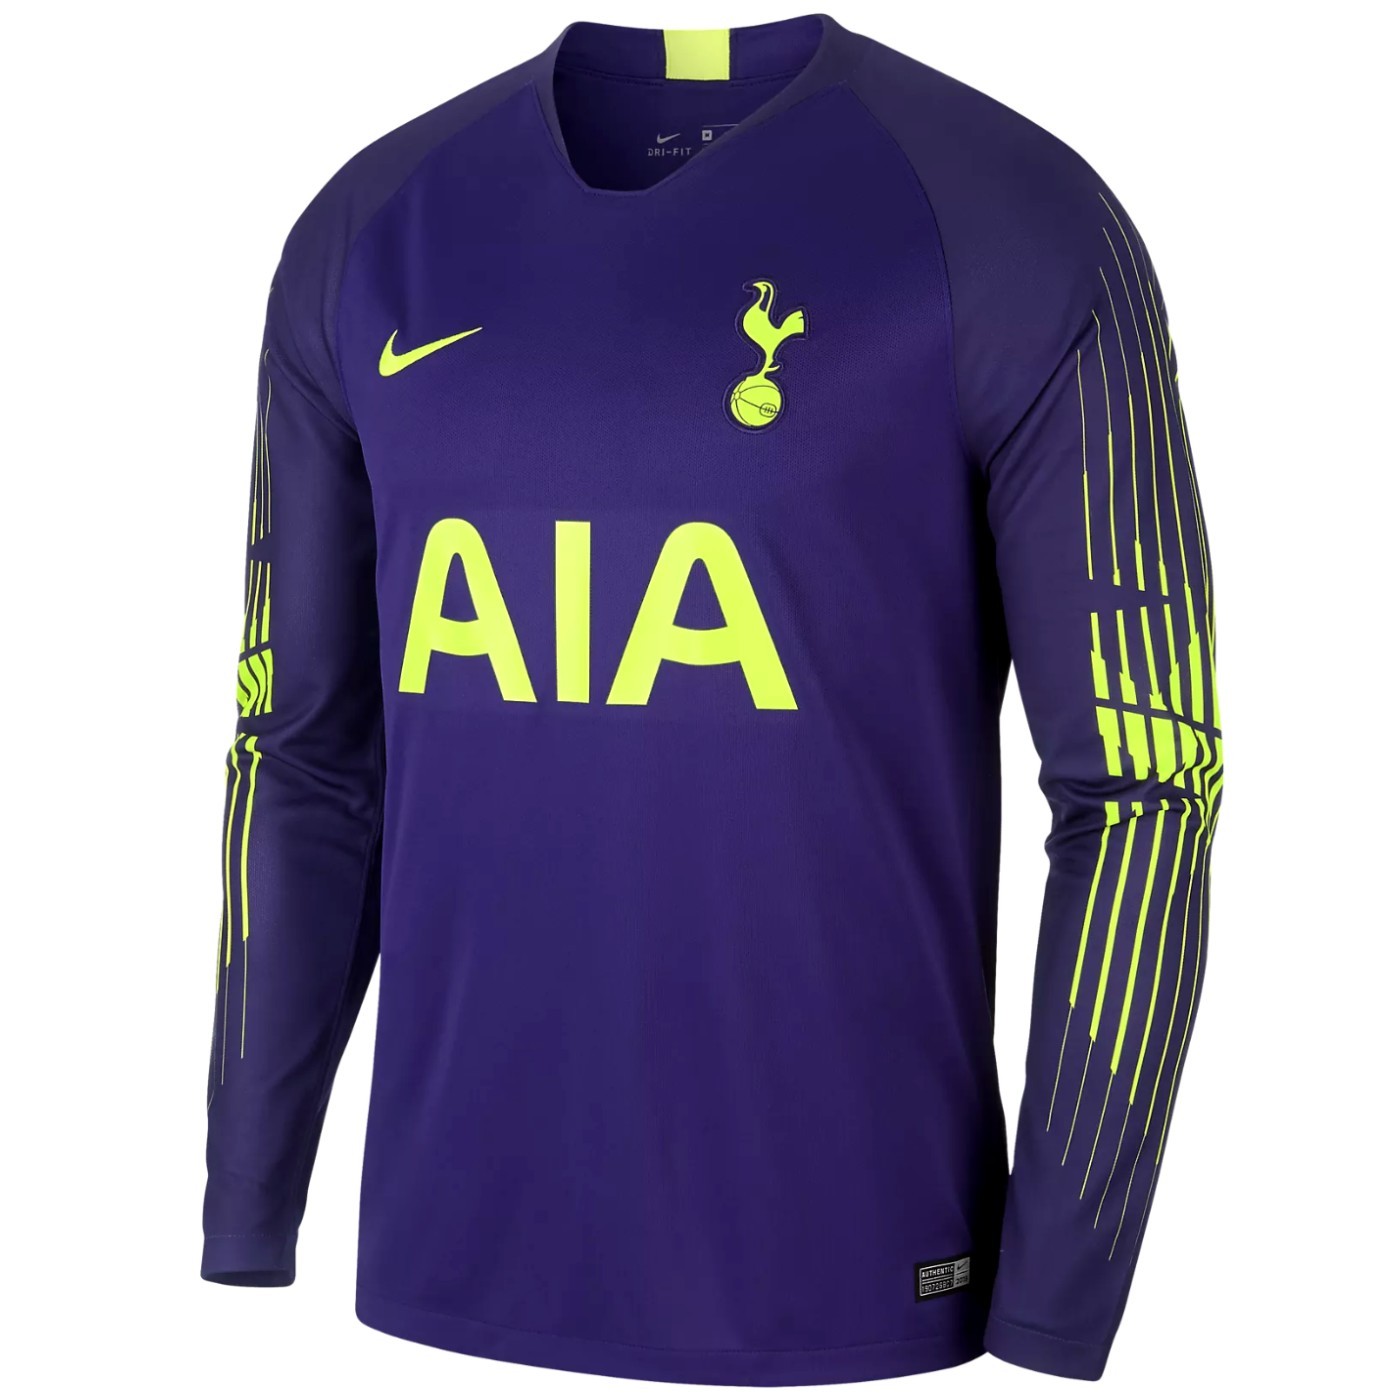 Tottenham Hotspur home shirt for 2018-19.